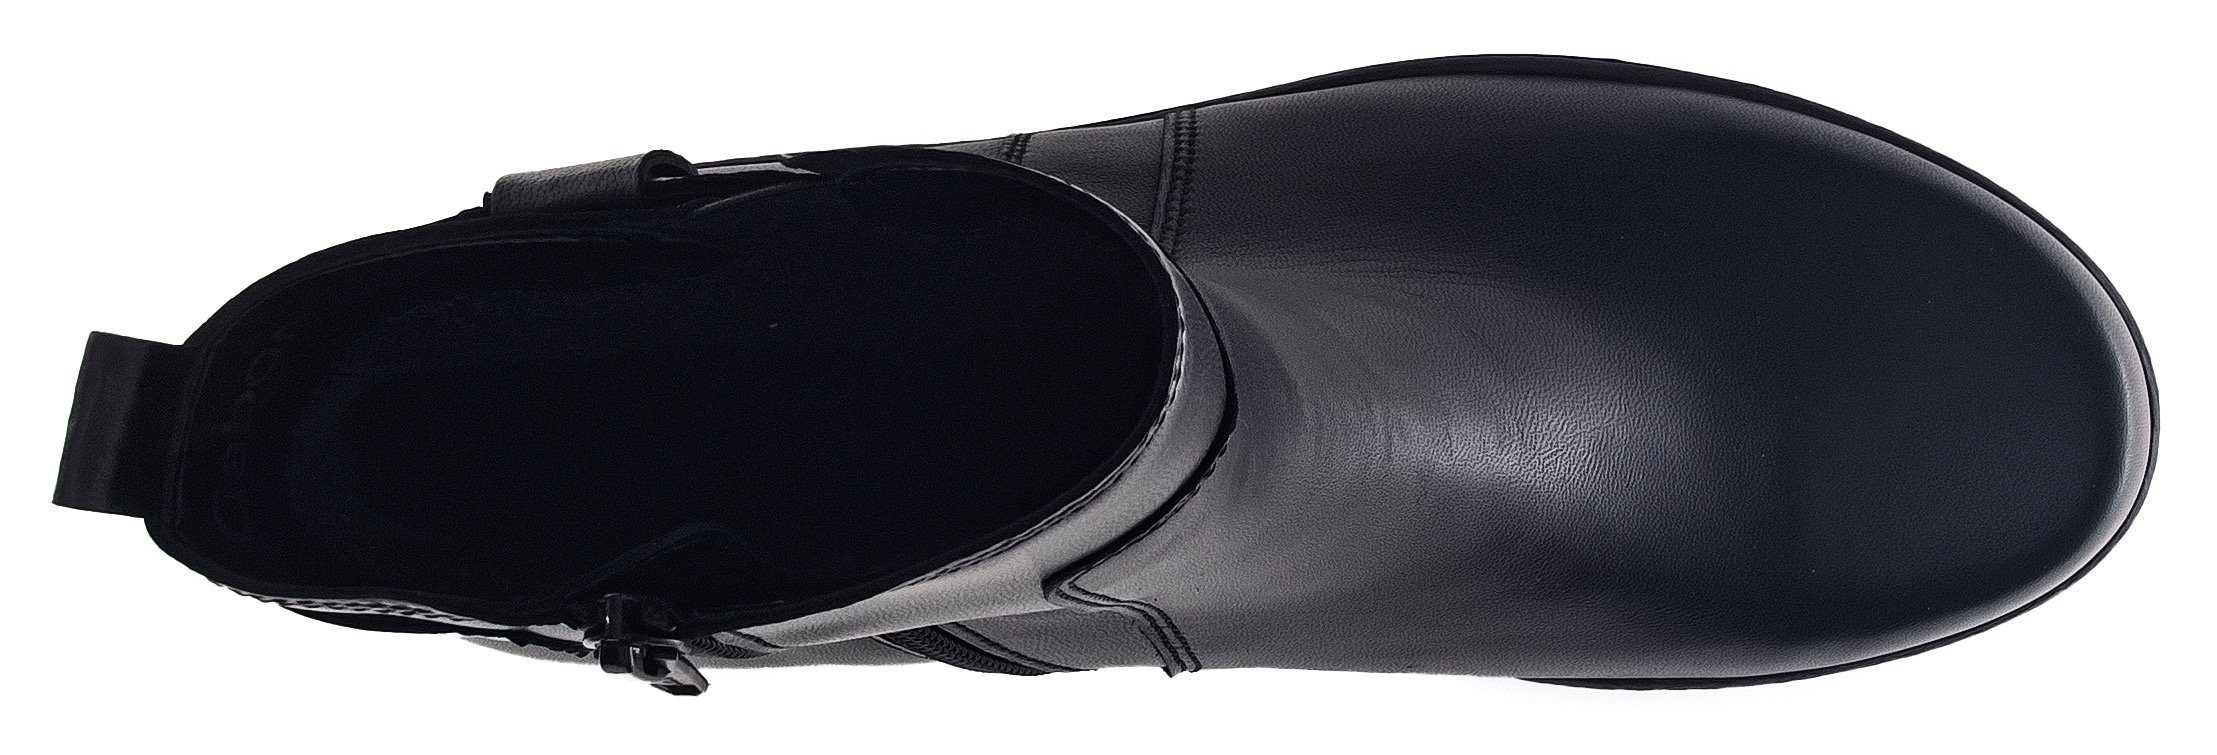 Gabor Stiefelette Best schwarz Fitting-Ausstattung mit